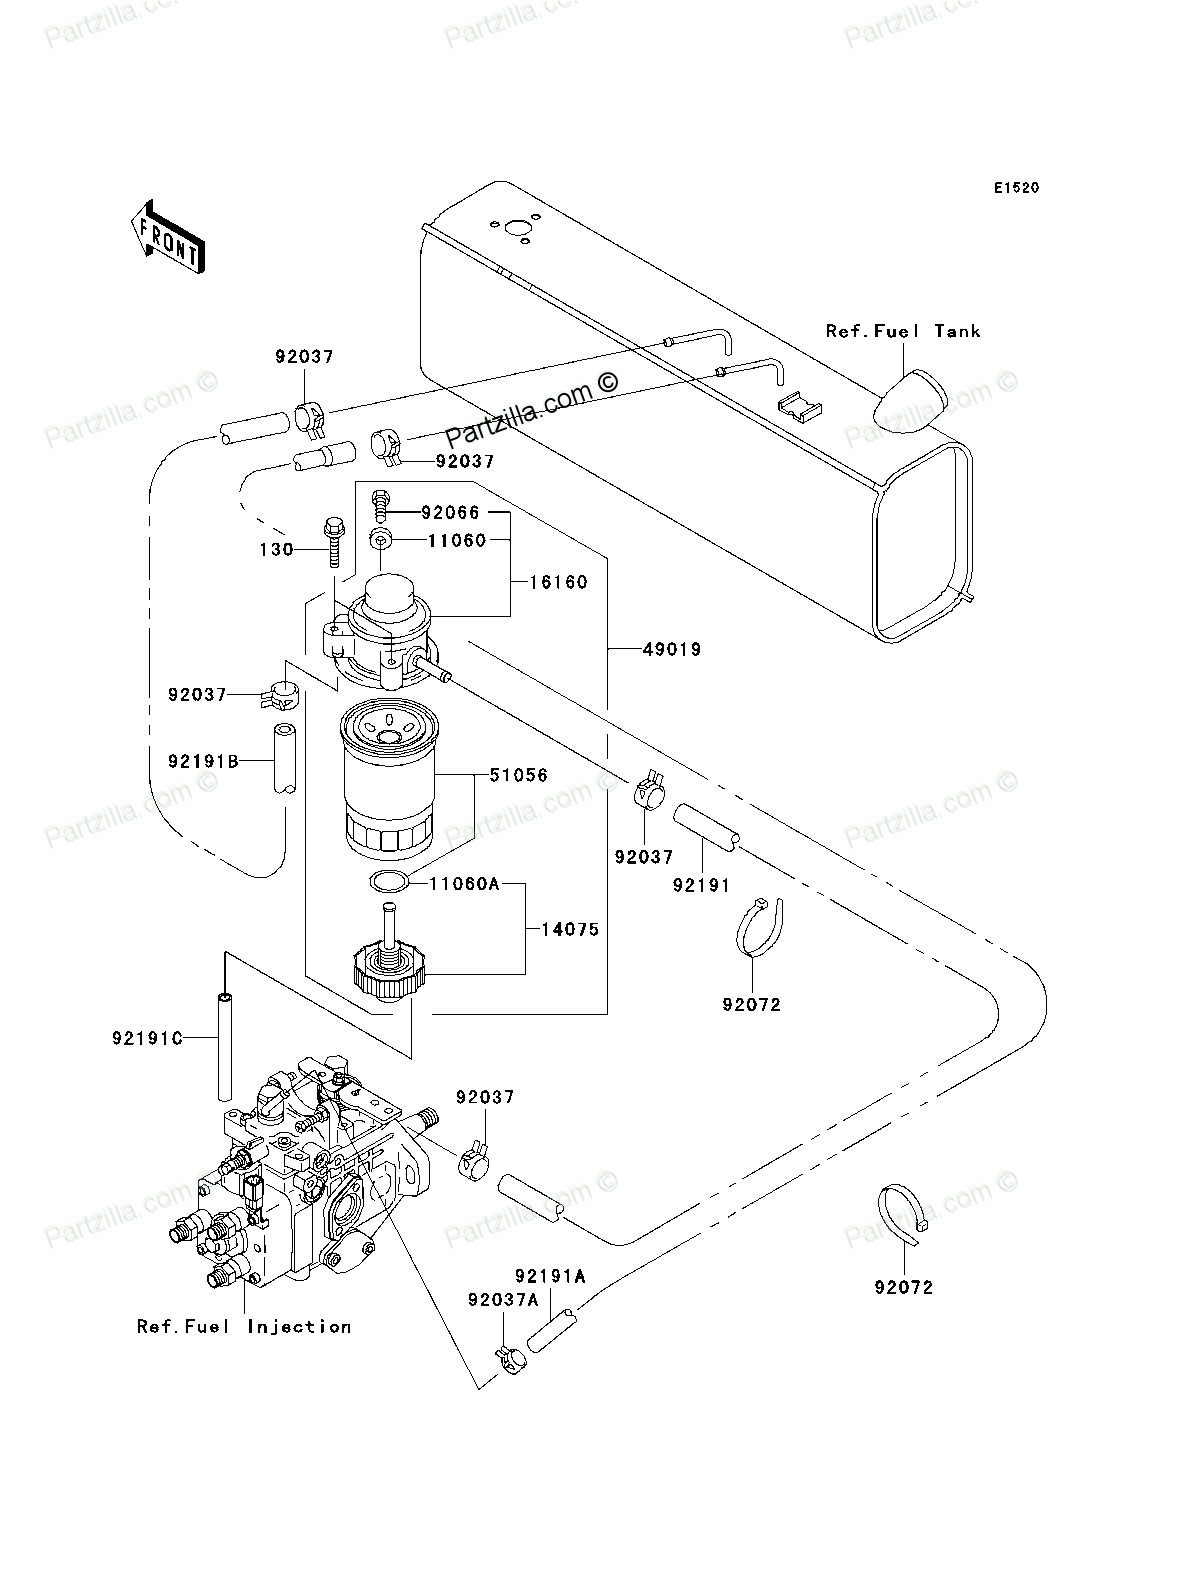 john deere 3020 wiring diagram pdf labeled 1968 4020 starter 5g 5 at